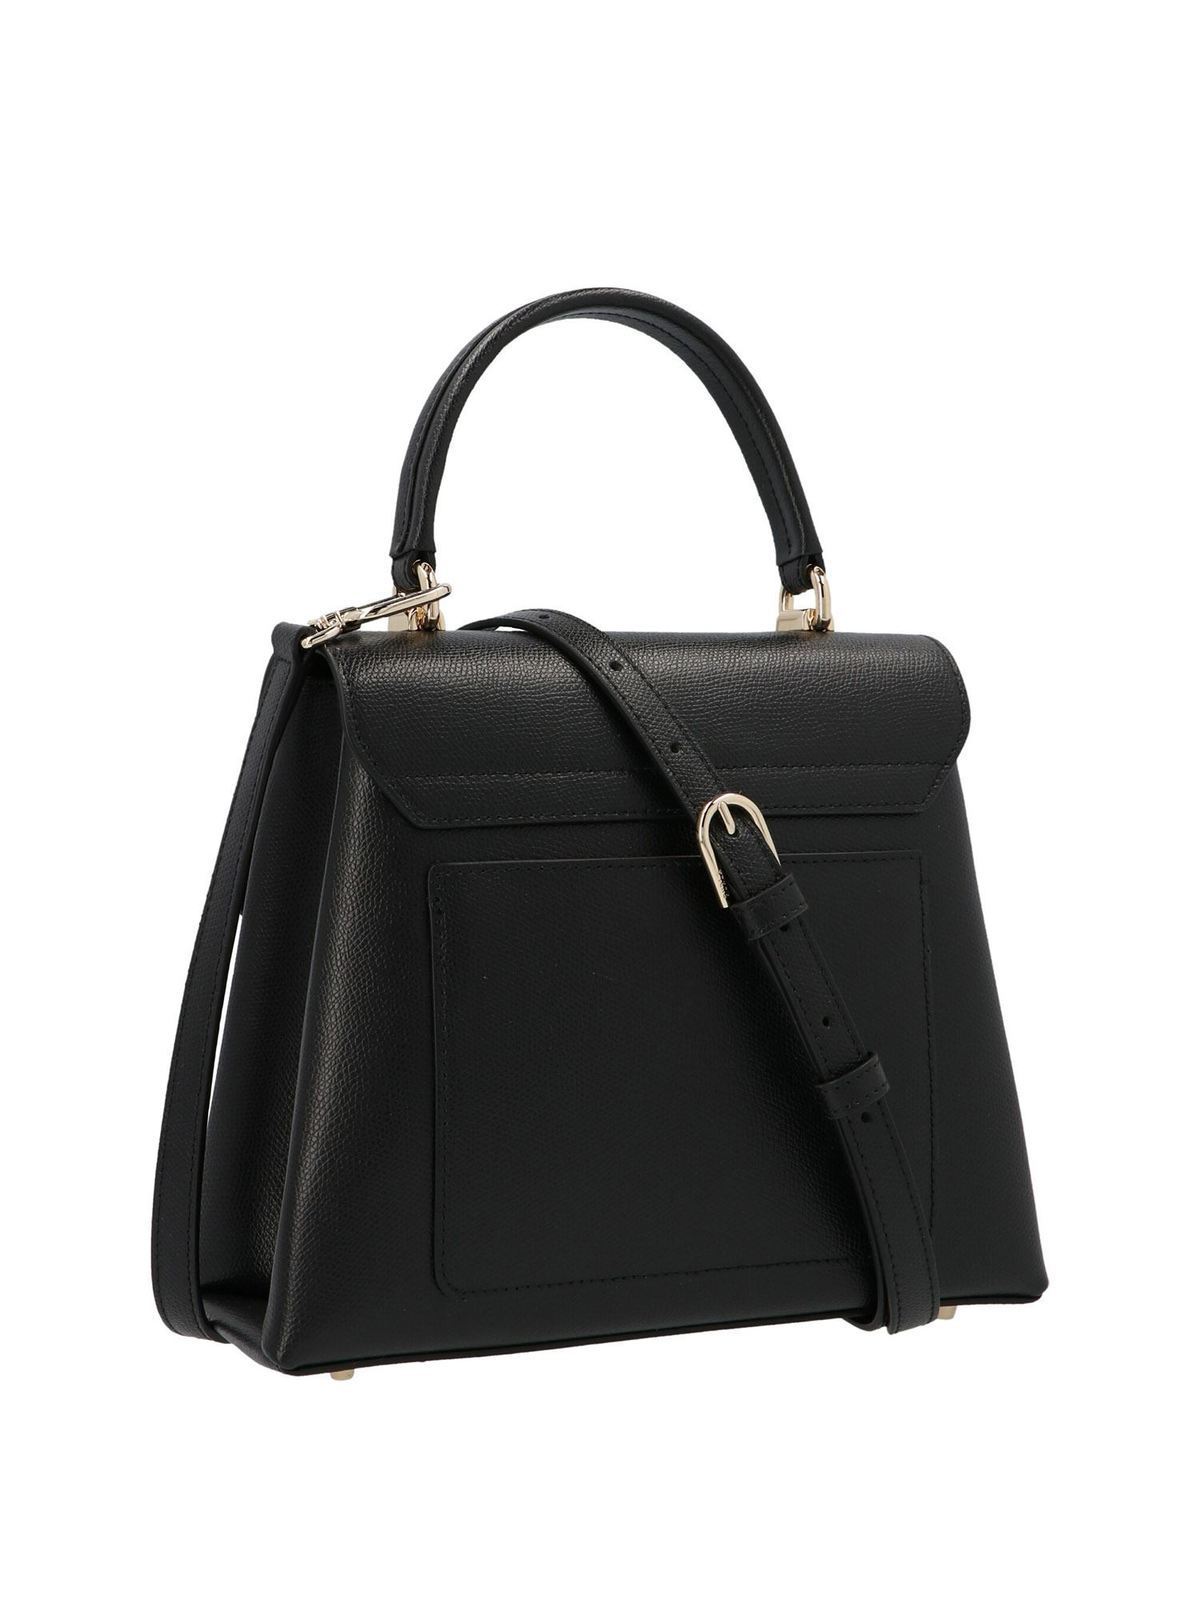 Totes bags Furla - 1927 S handbag in black - BAKPACOARE000O6000